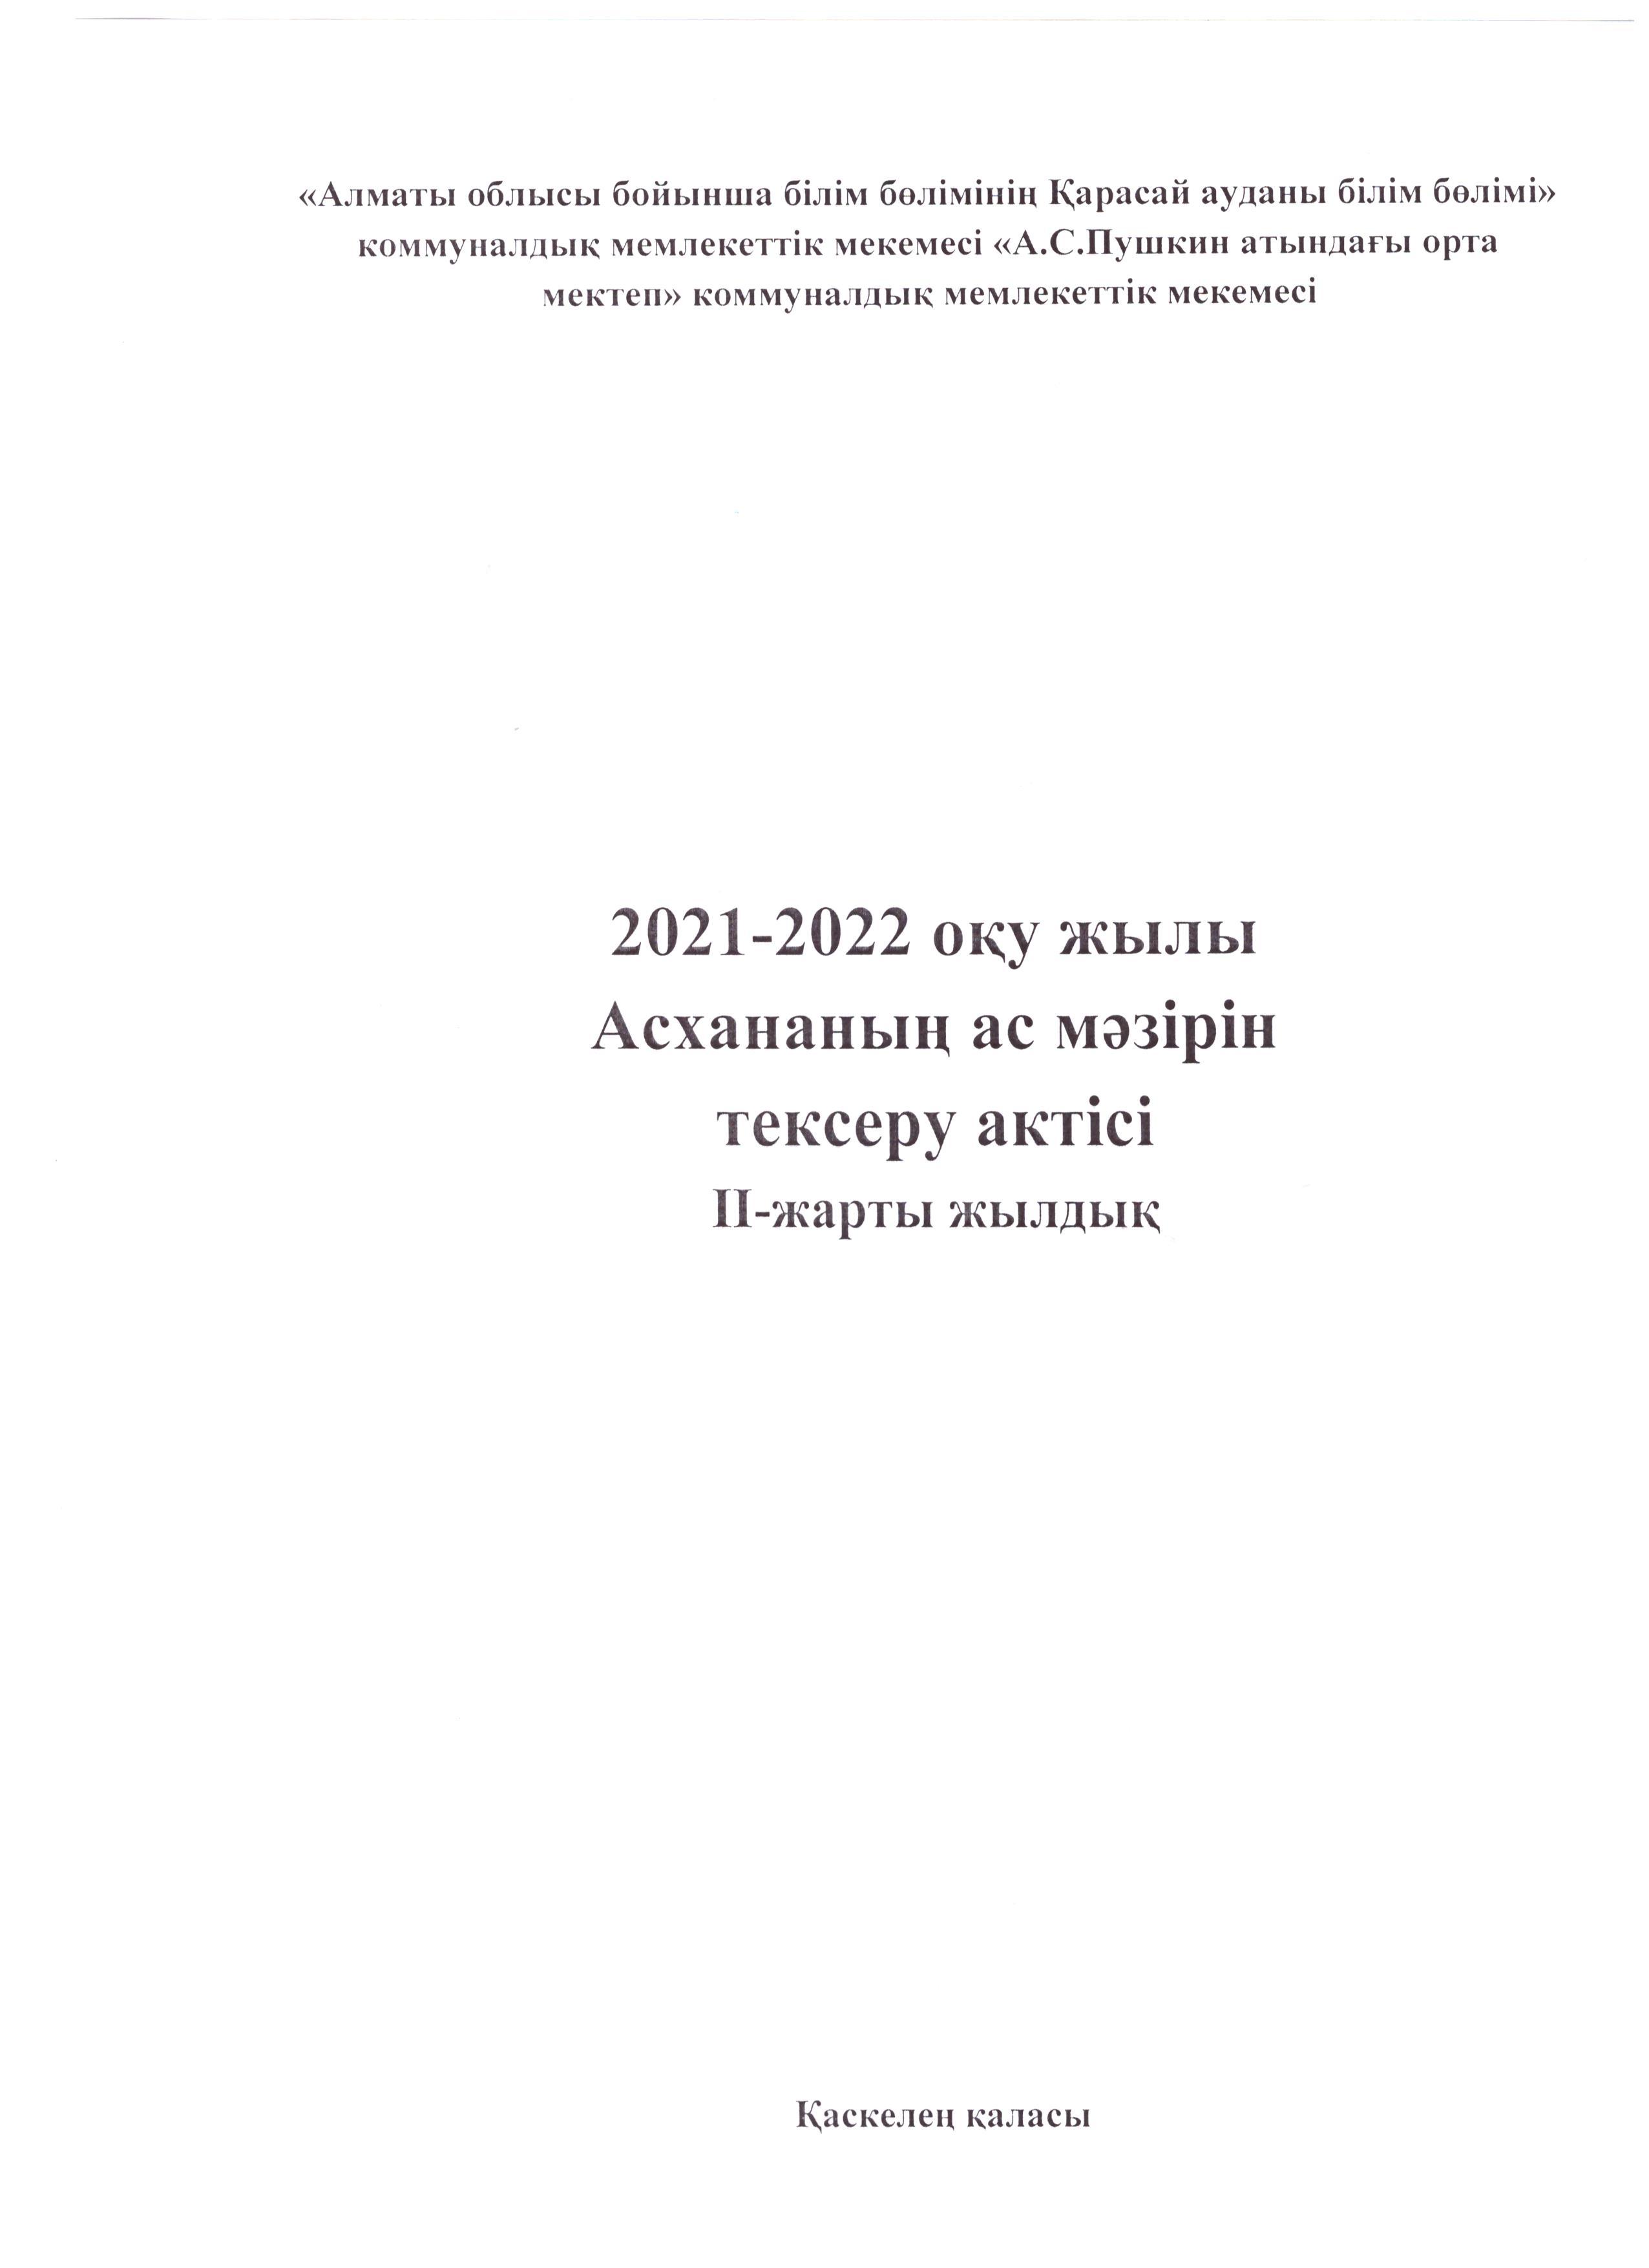 Ыстық тамақты тексеру туралы актісі, 2021-2022 оқу жылы